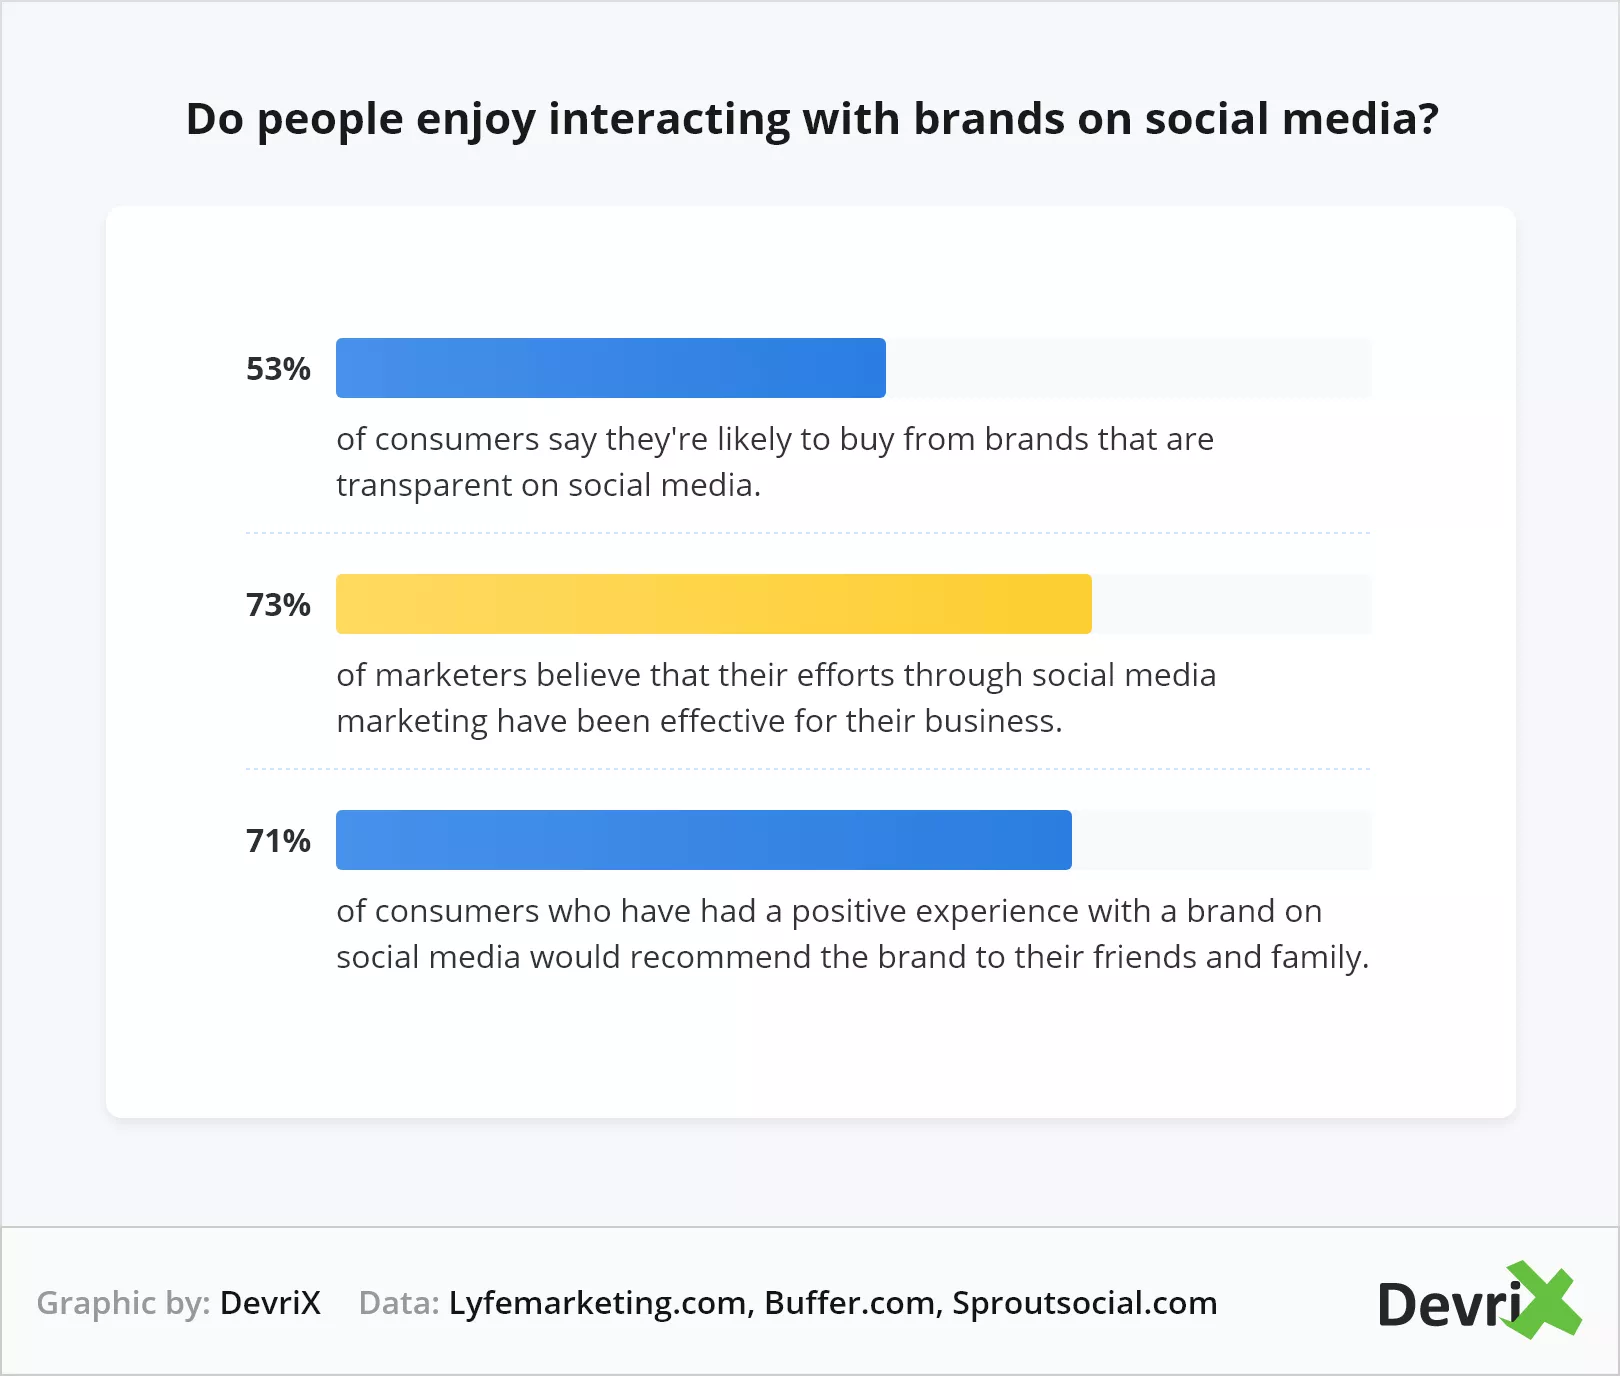 هل يستمتع الأشخاص بالتفاعل مع العلامات التجارية على وسائل التواصل الاجتماعي